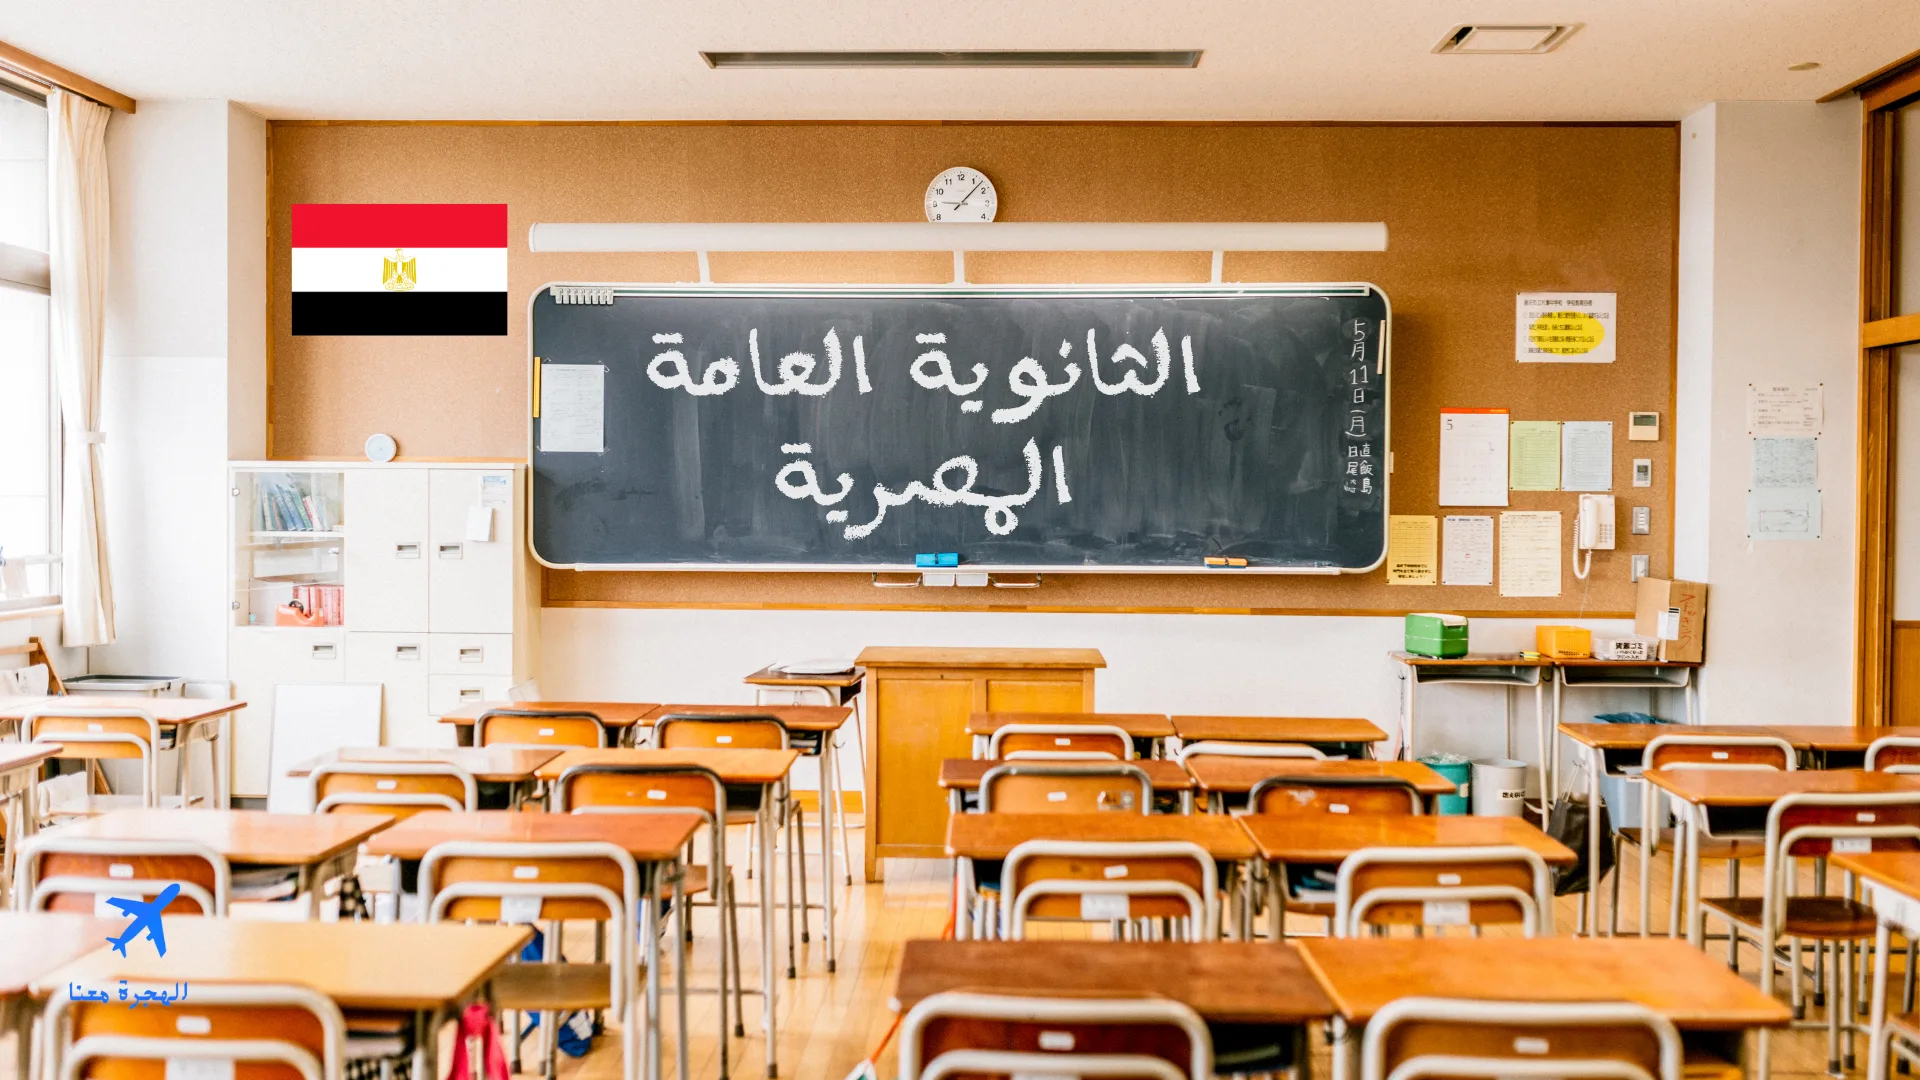 صورة فصل في مدرسة وسبورة مكتوب عليها الثانوية العامة المصرية